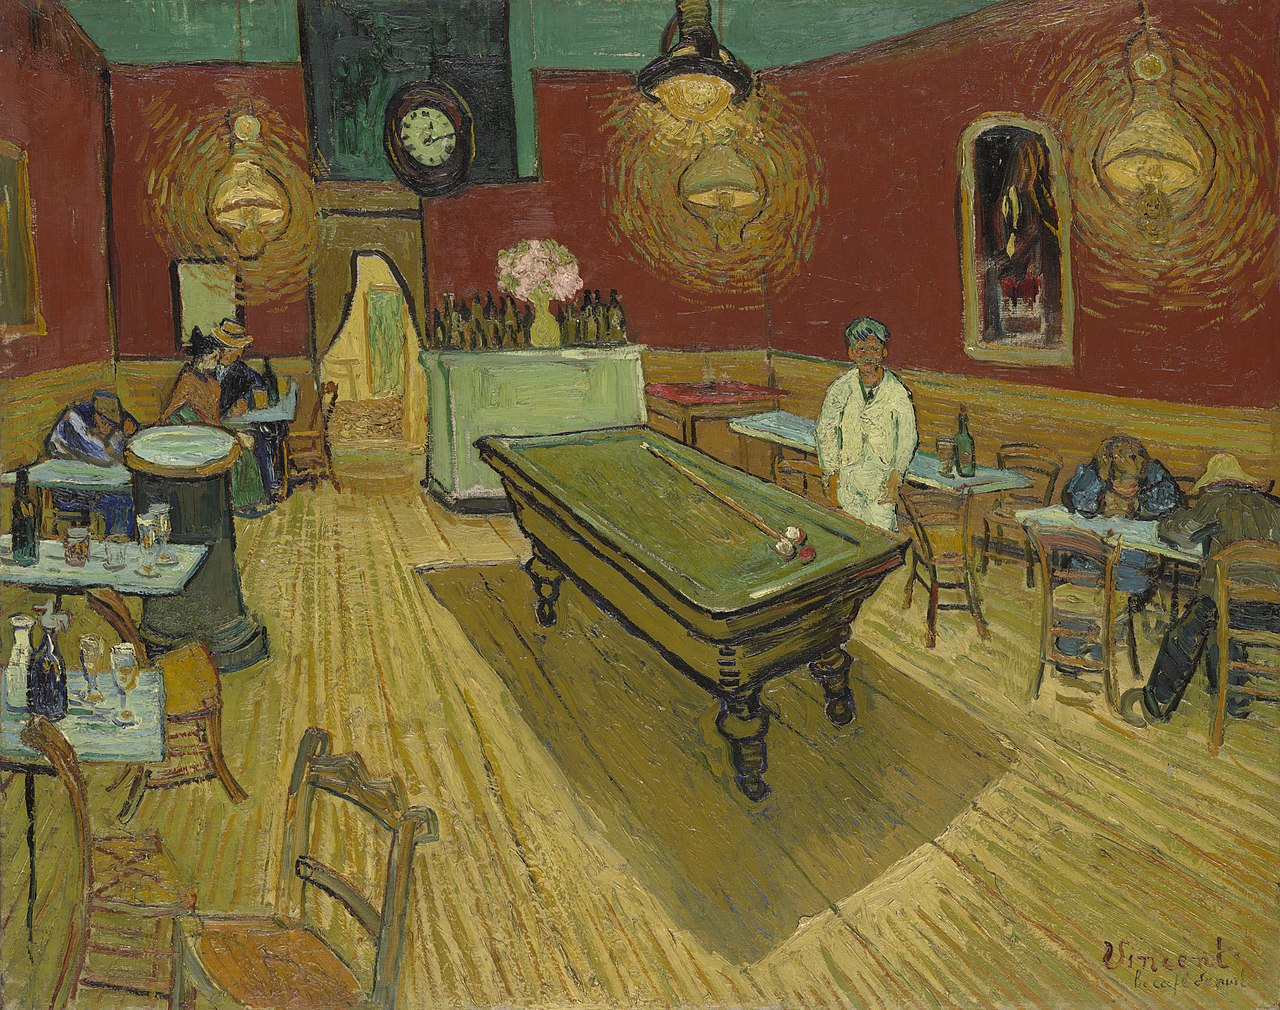 그림3) 빈센트 반 고흐, 밤의 카페,1888.jpg